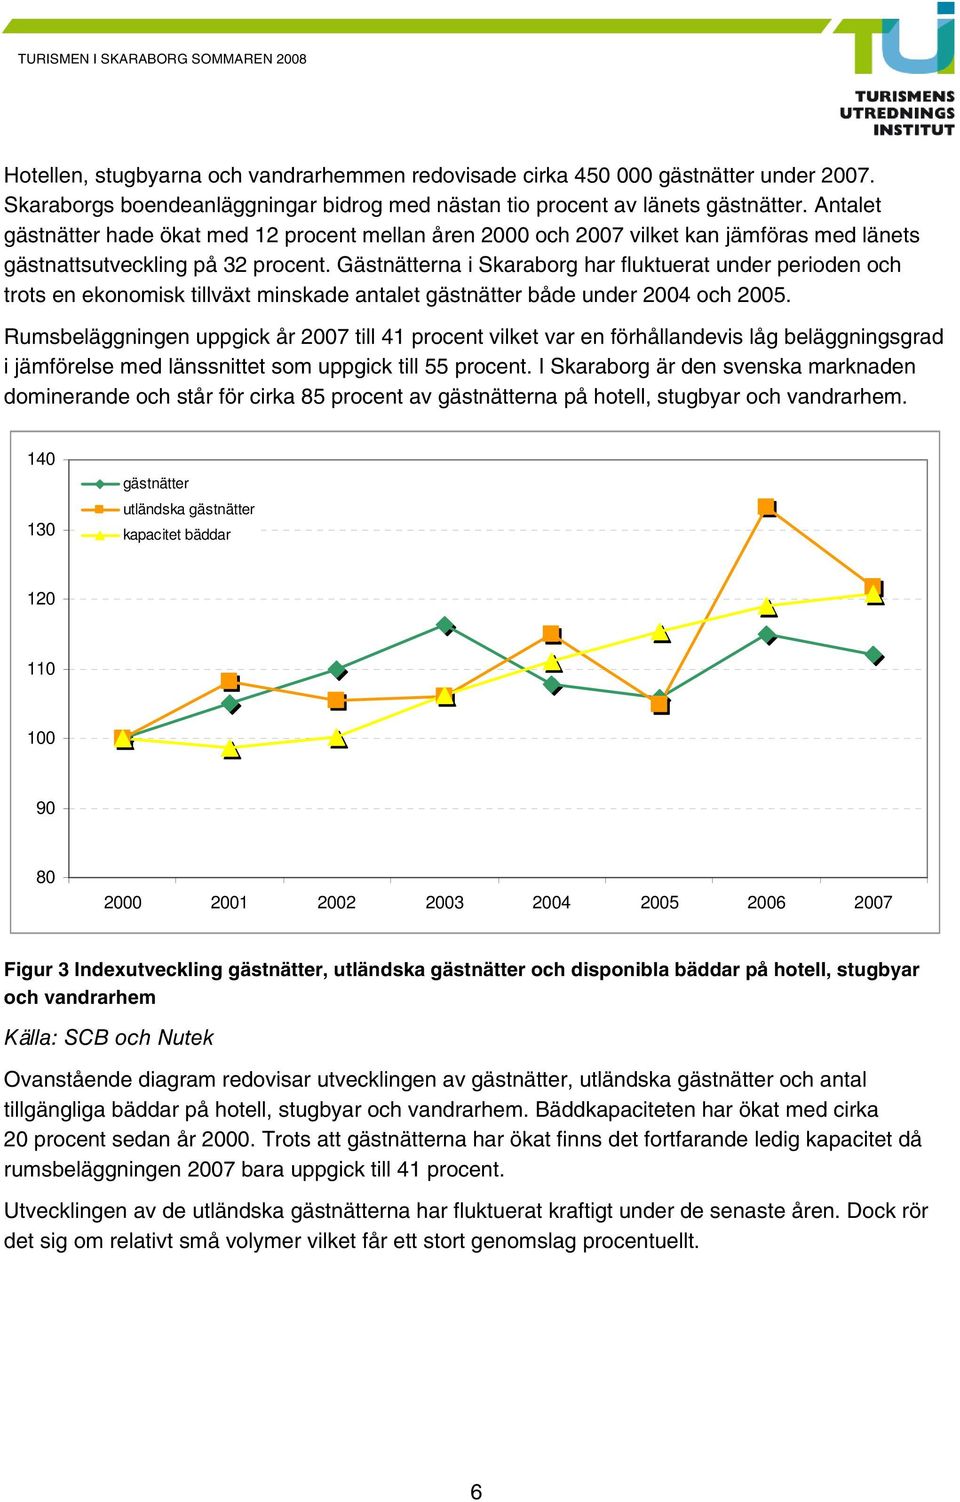 Gästnätterna i Skaraborg har fluktuerat under perioden och trots en ekonomisk tillväxt minskade antalet gästnätter både under 2004 och 2005.